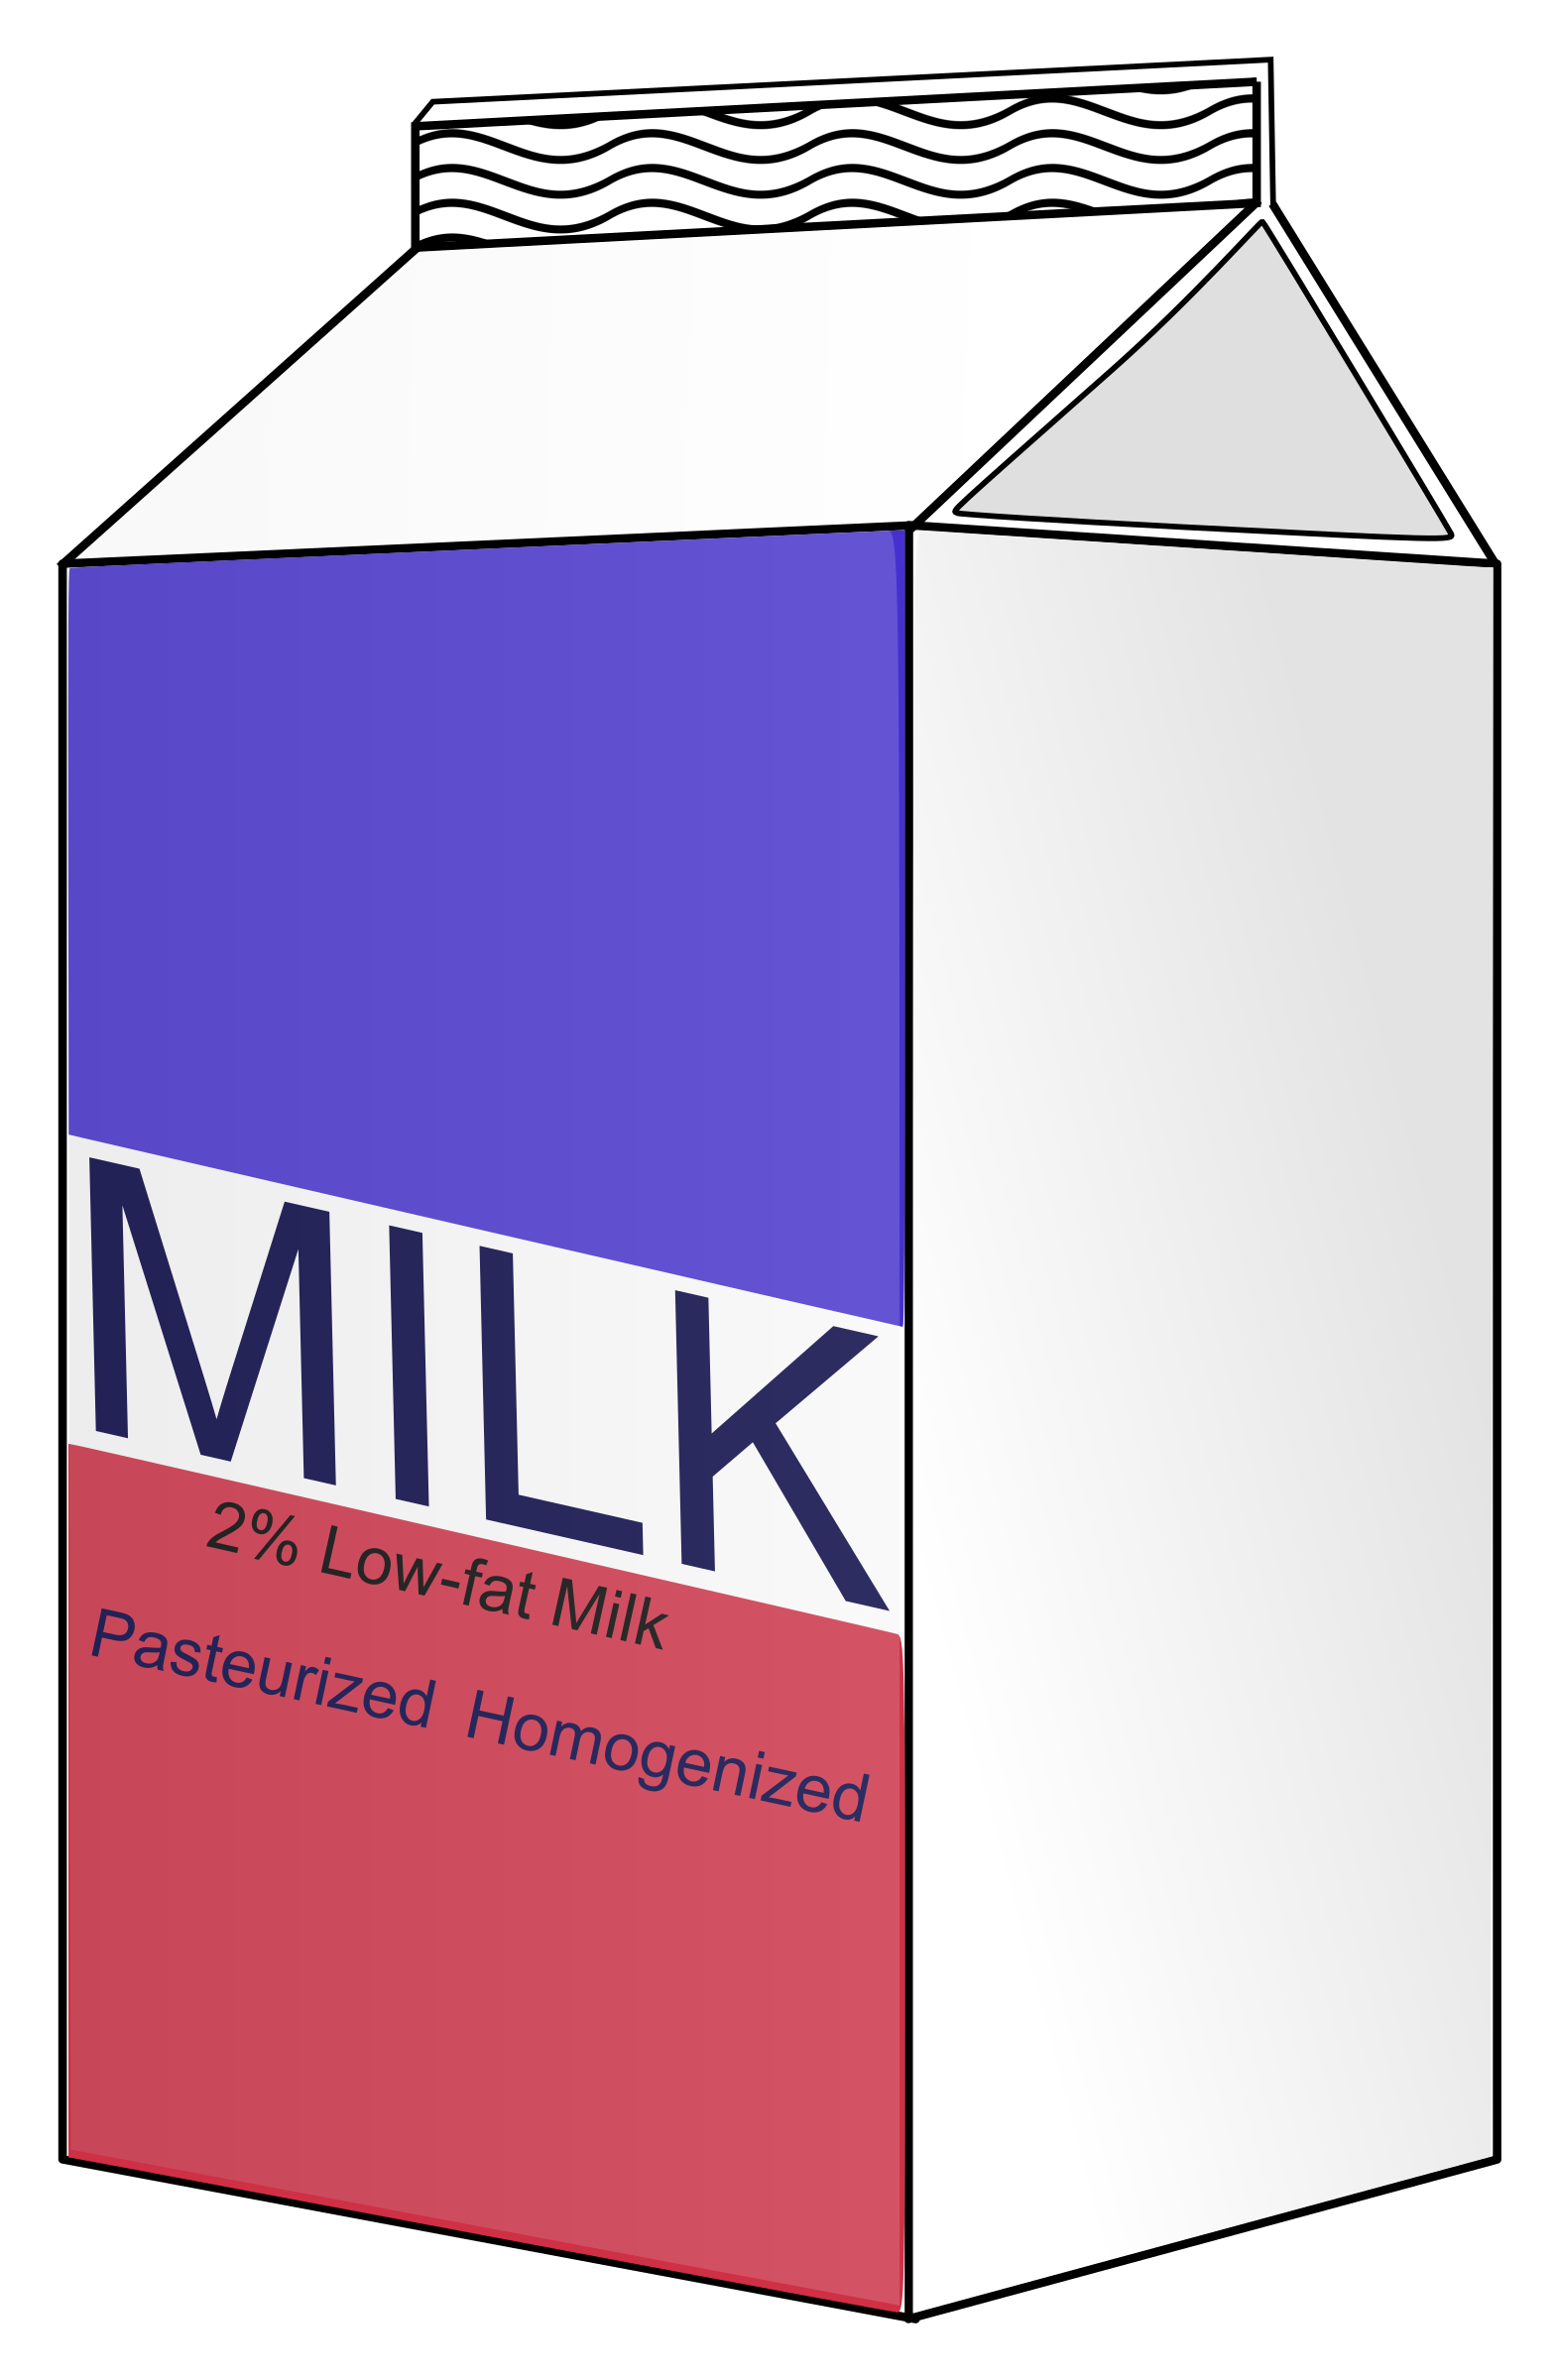 milk carton vector clipart image photo 14244